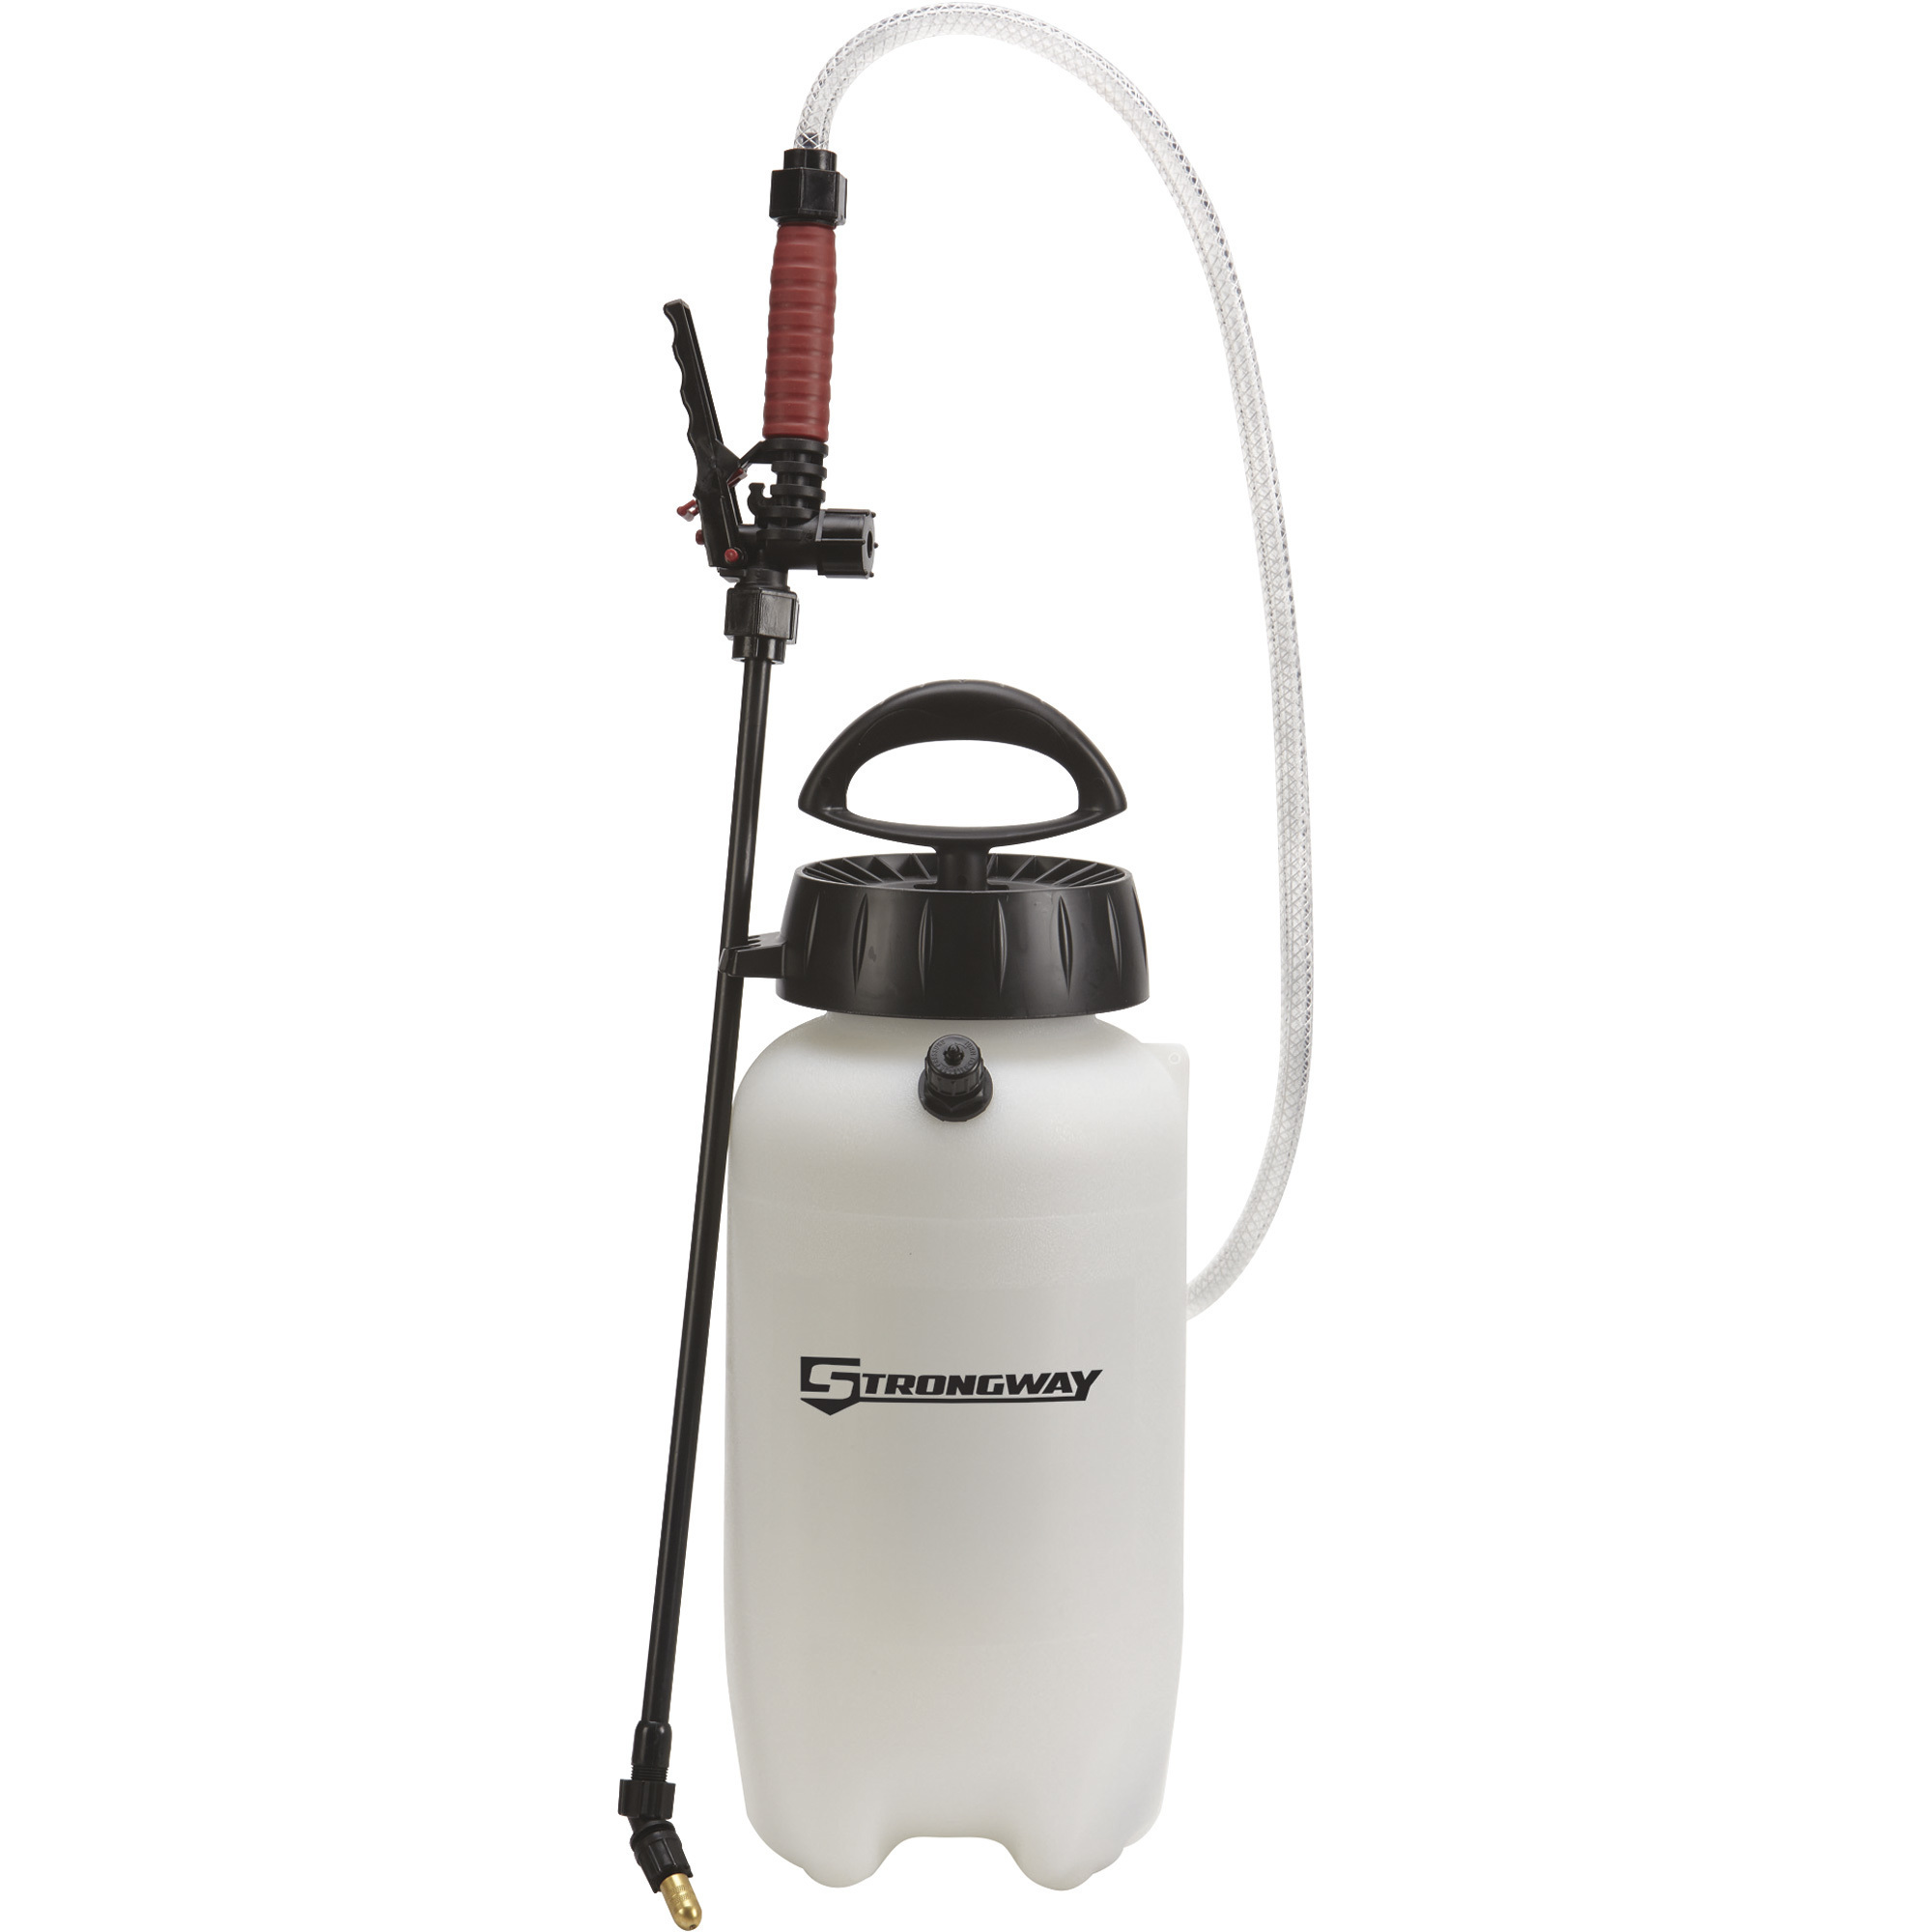 Strongway Poly Portable Sprayer, 2-Gallon Capacity, 45 PSI